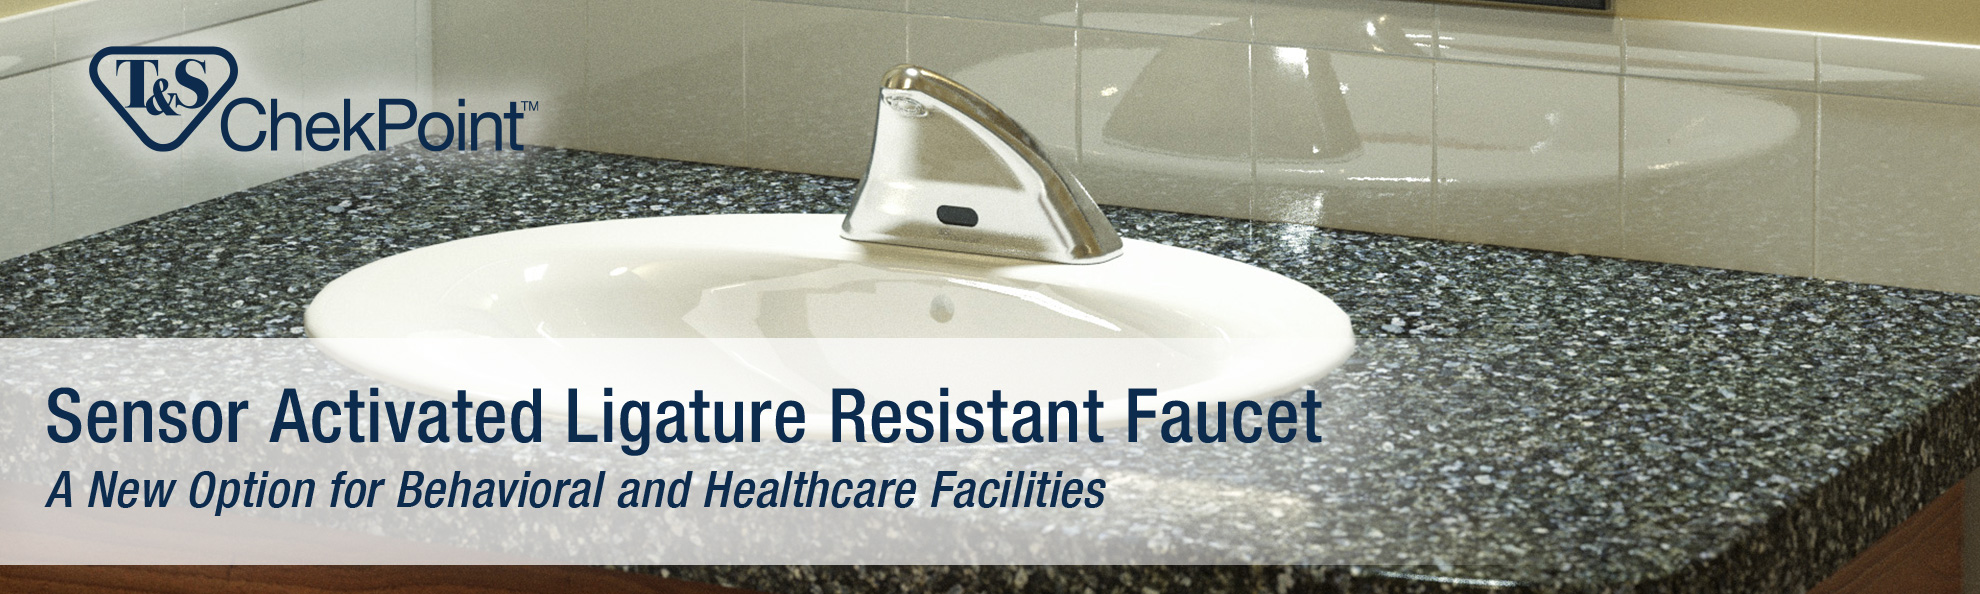 Sensor Activate Ligature Resistant Faucet